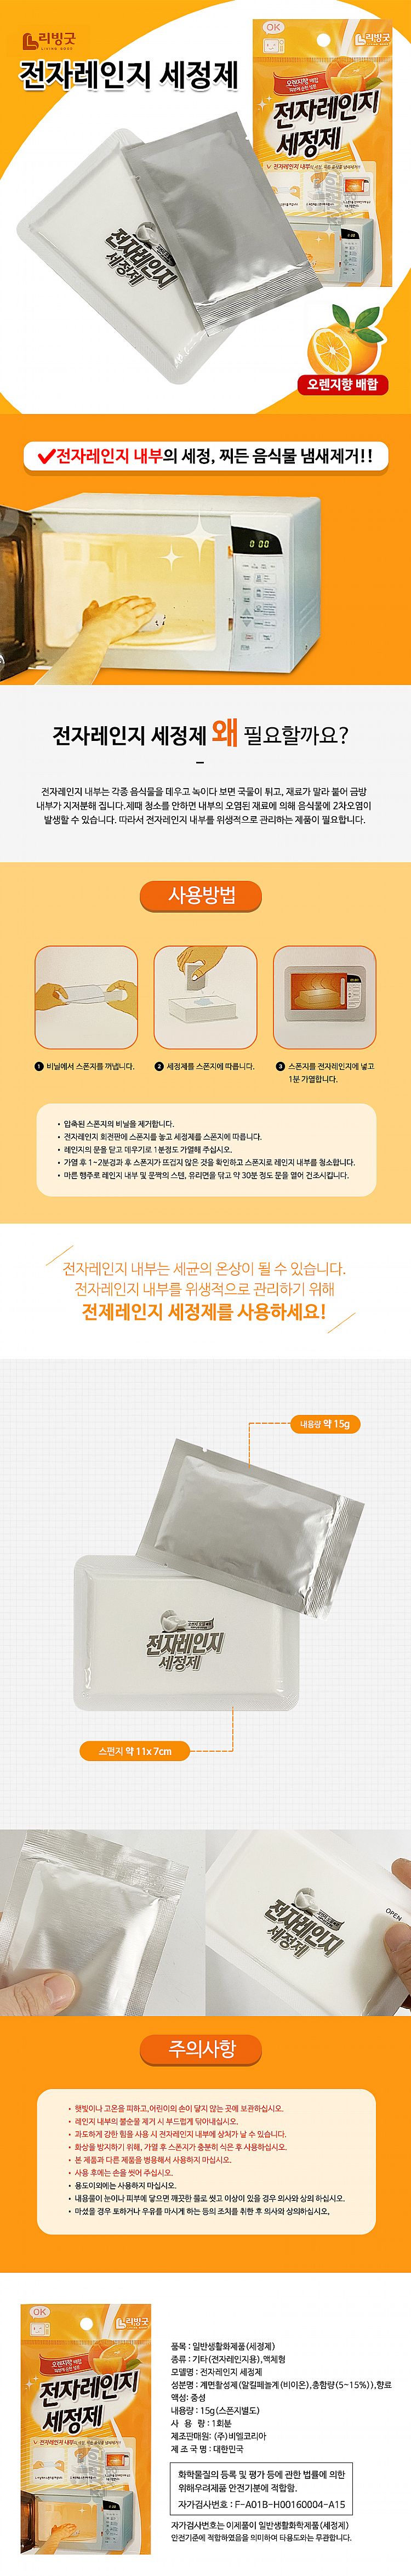 韓國 柑橘 韓國 清潔劑 微波爐 清潔劑